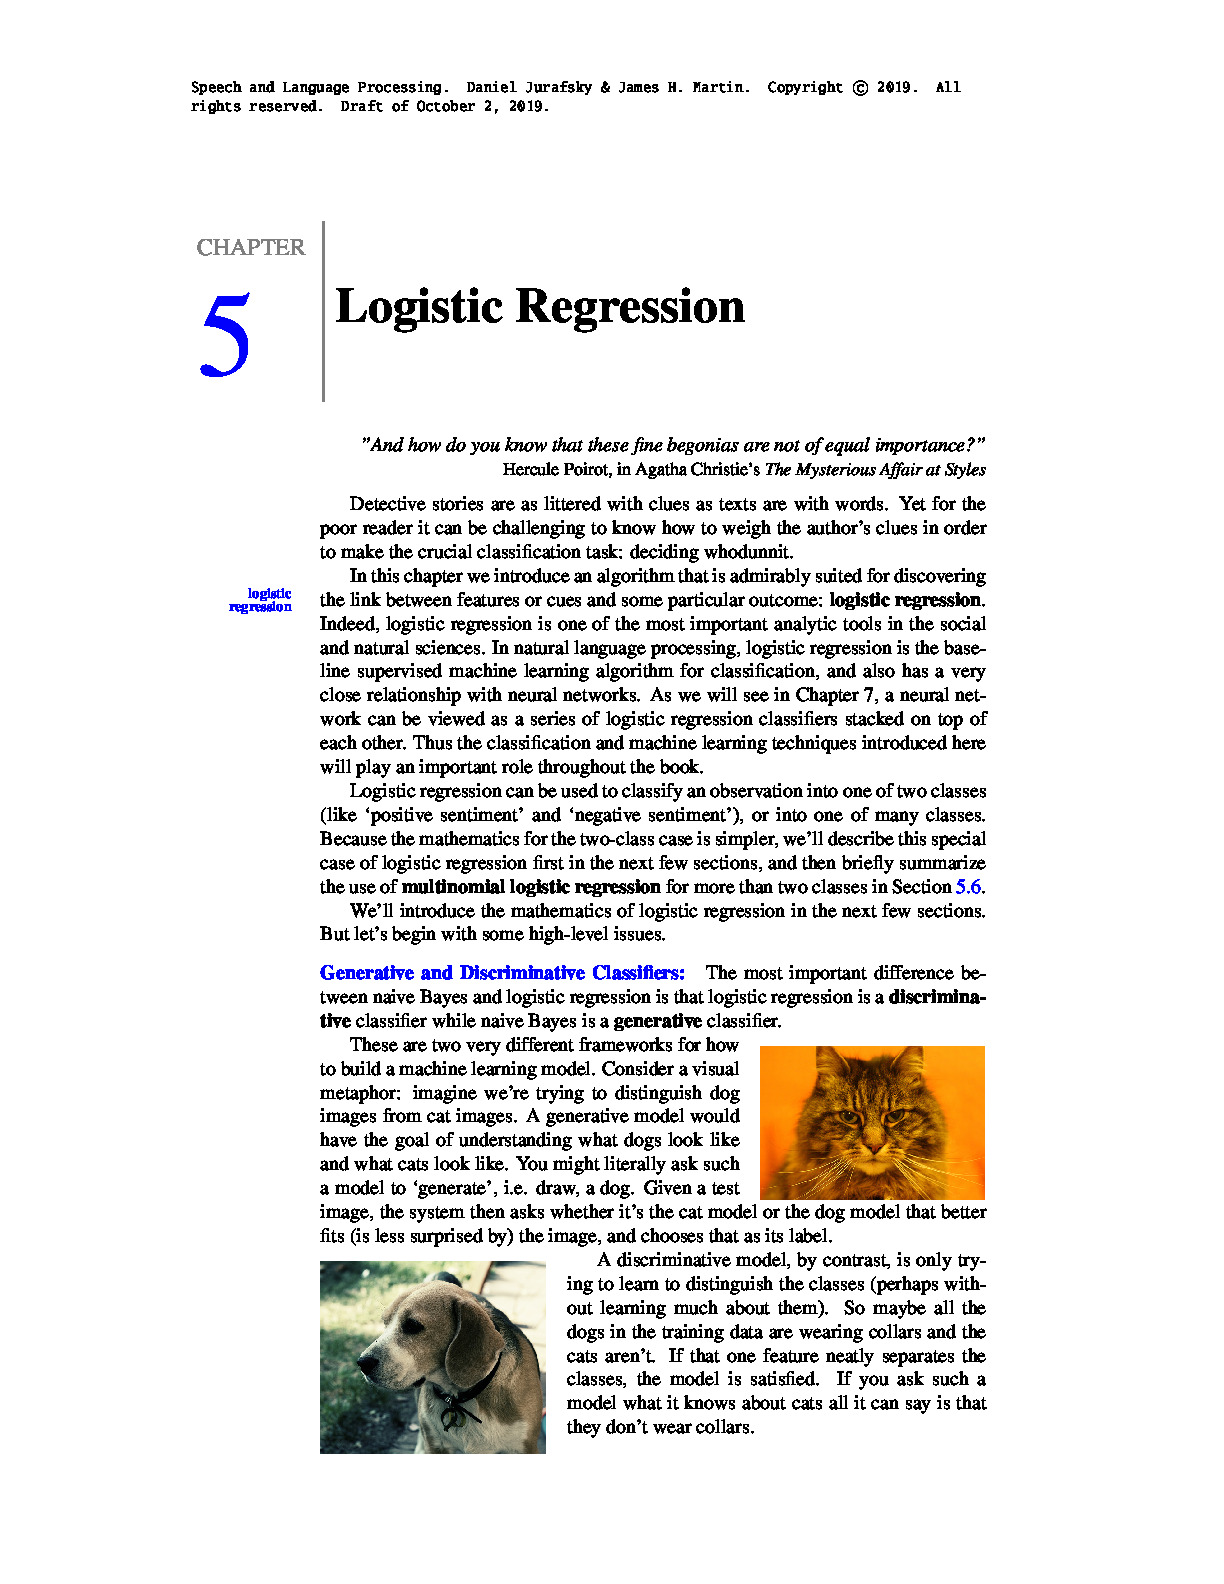 chap5 – logistic regression